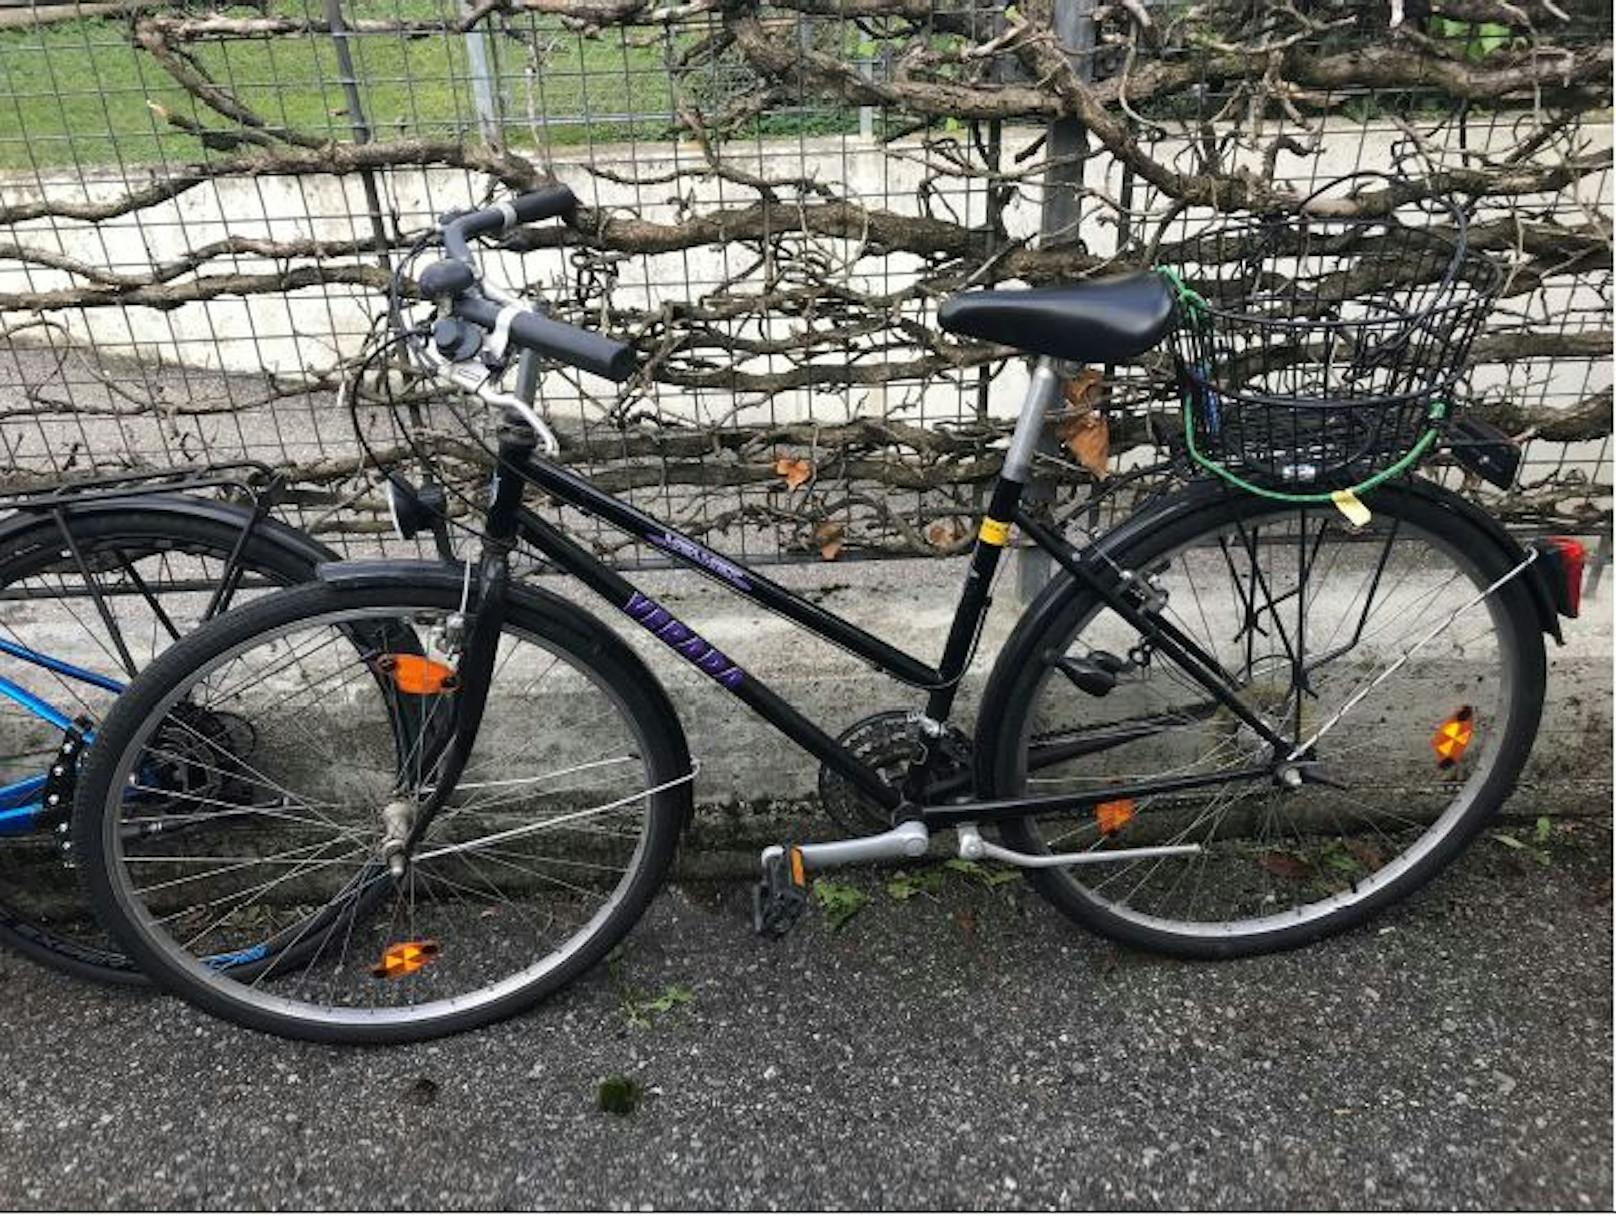 Wem gehören diese Fahrräder?